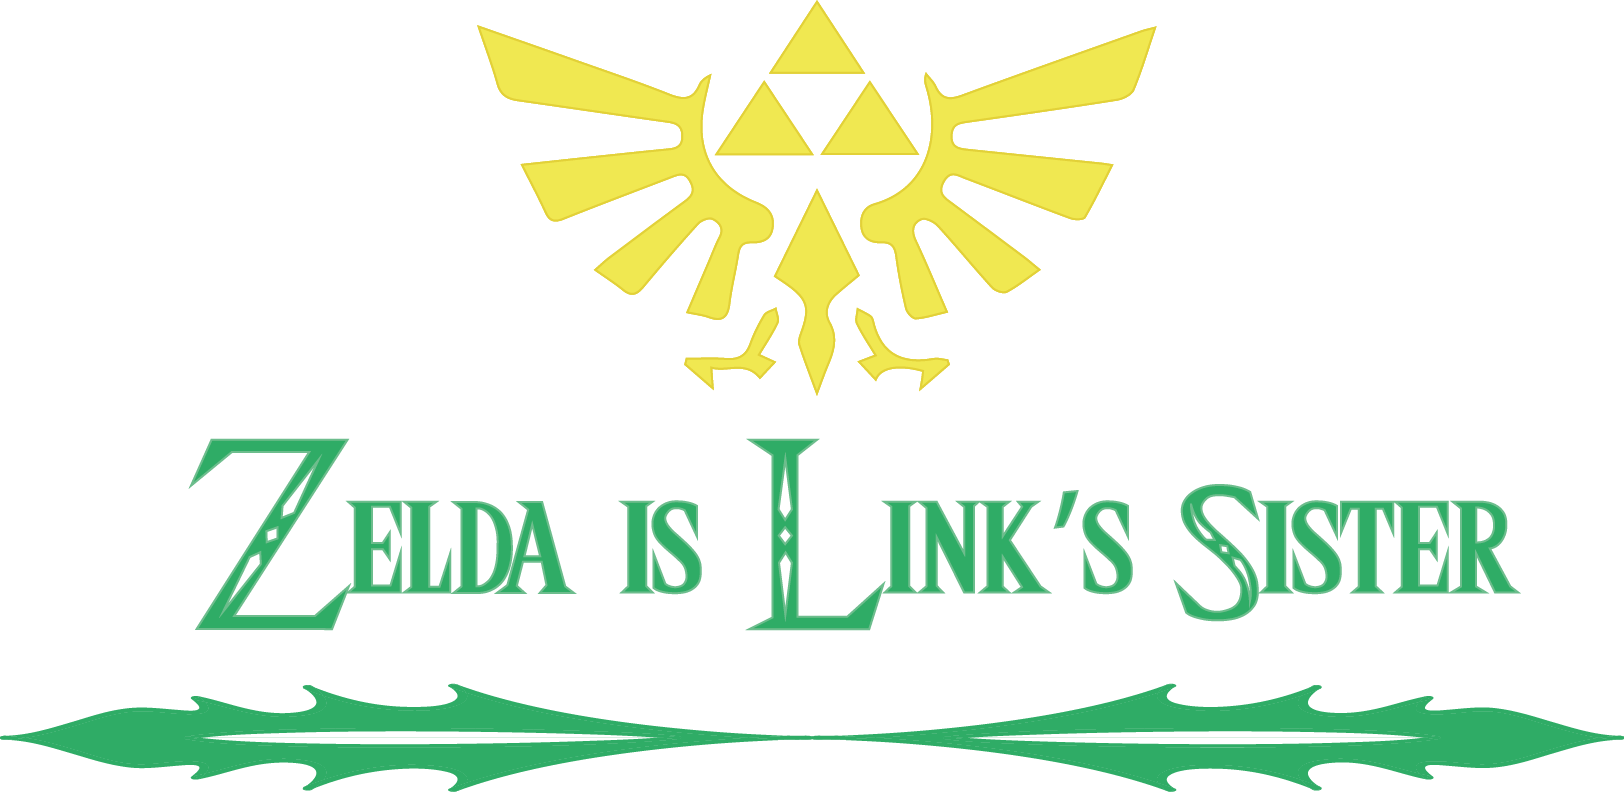 Zelda Is The Sister Of Link - Legend Of Zelda Clipart (1624x792), Png Download